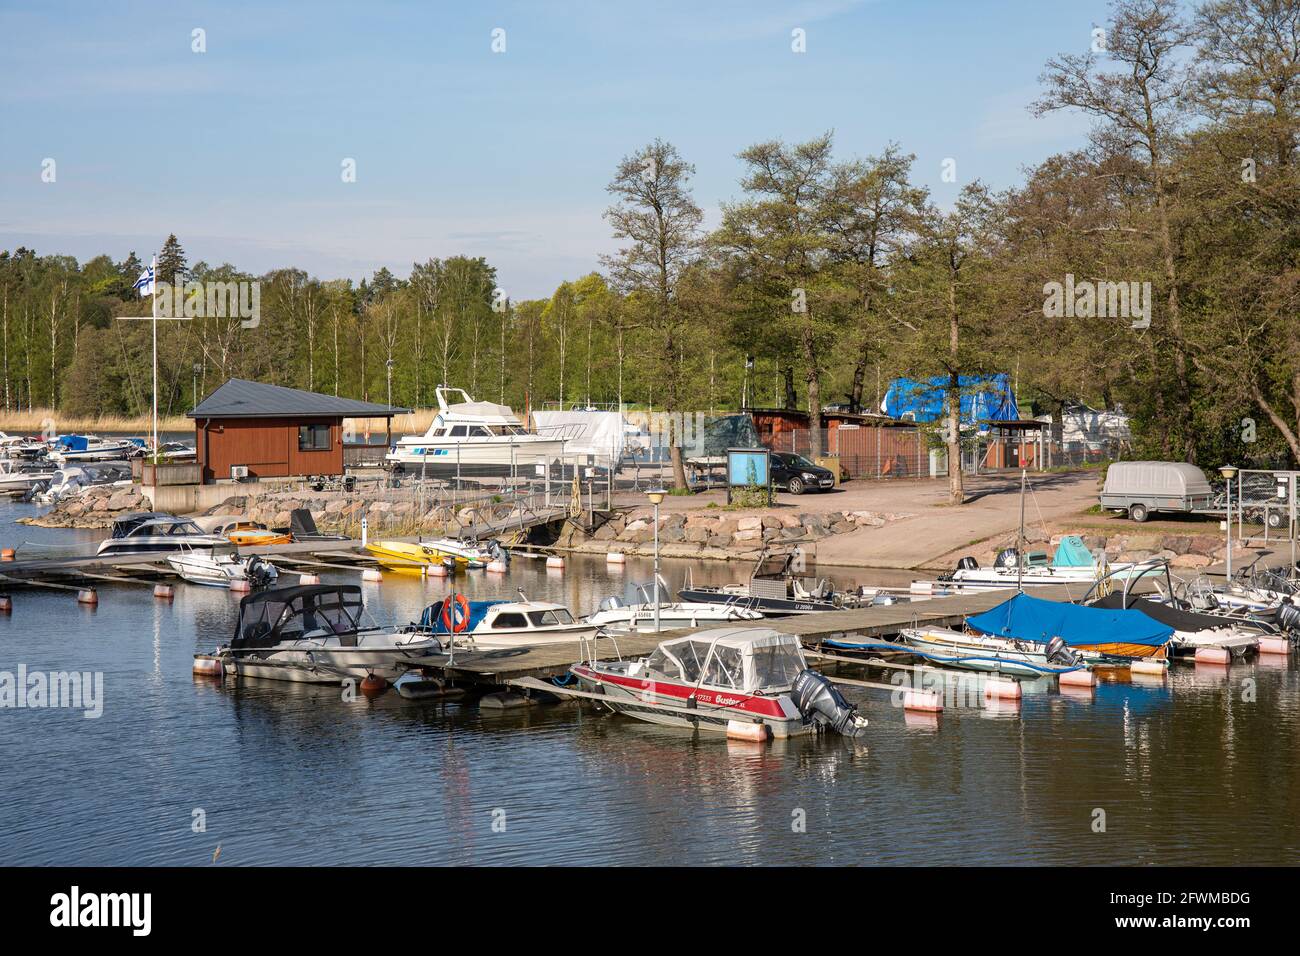 Munkan venekerho Anlegestellen und Boote in Ramsaynranta im Munkkiniemi-Bezirk in Helsinki, Finnland. Auch die Mordstätte von Satu Sallinen im Jahr 1997. Stockfoto